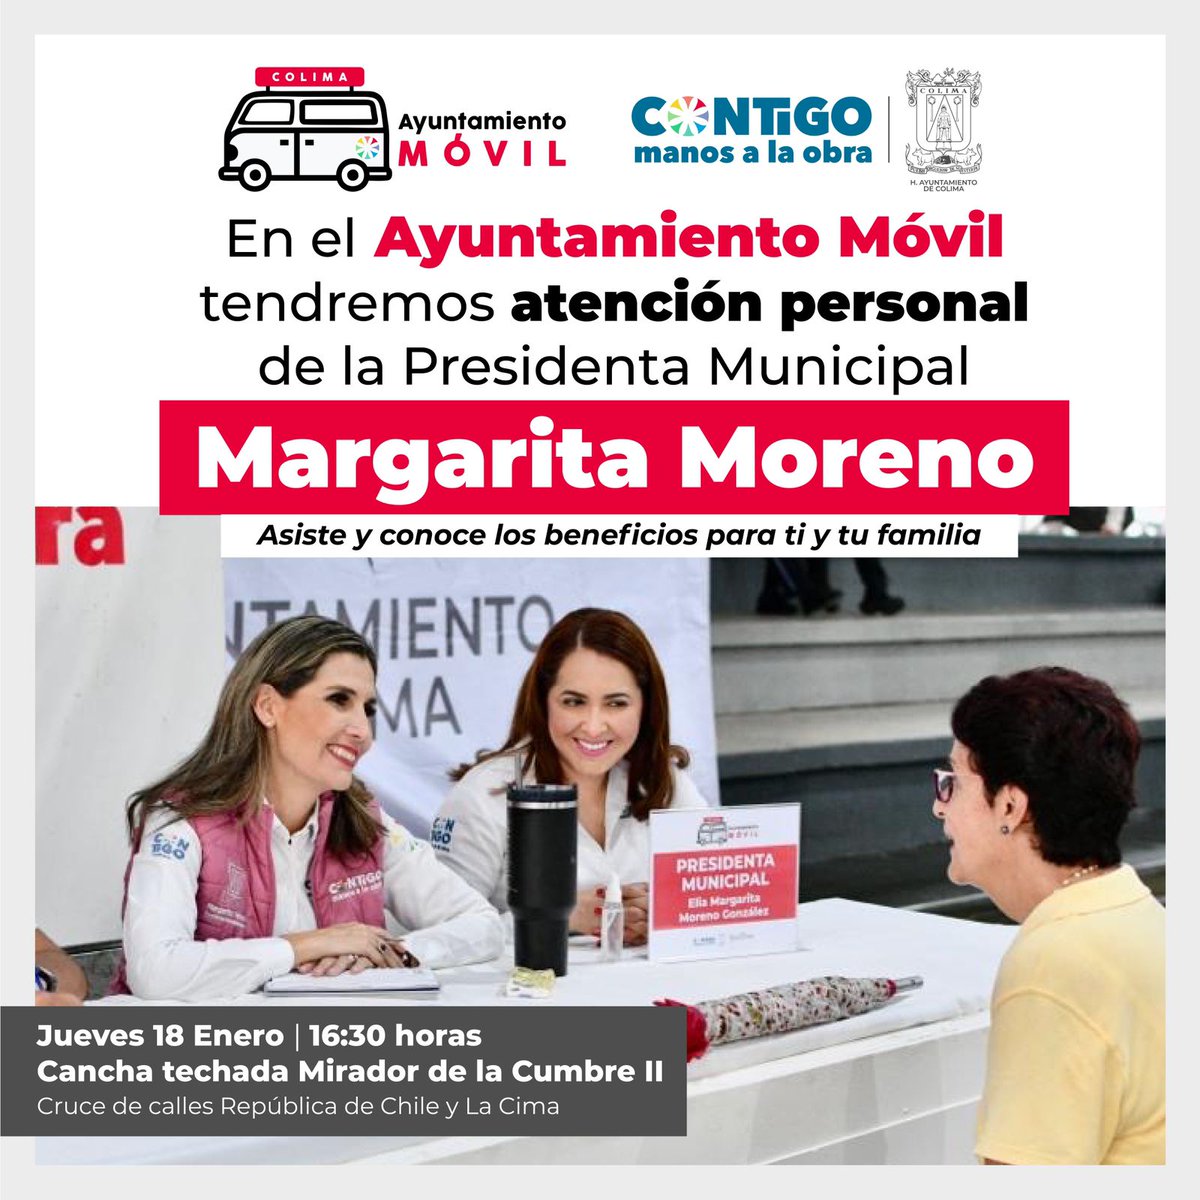 ¡Asiste HOY al #AyuntamientoMóvil y recibe la atención personalizada de nuestra presidenta #MargaritaMoreno!
Te esperamos a partir de las 4:30 de la tarde, en la cancha techada de Mirador de la Cumbre II.
¡Asiste!